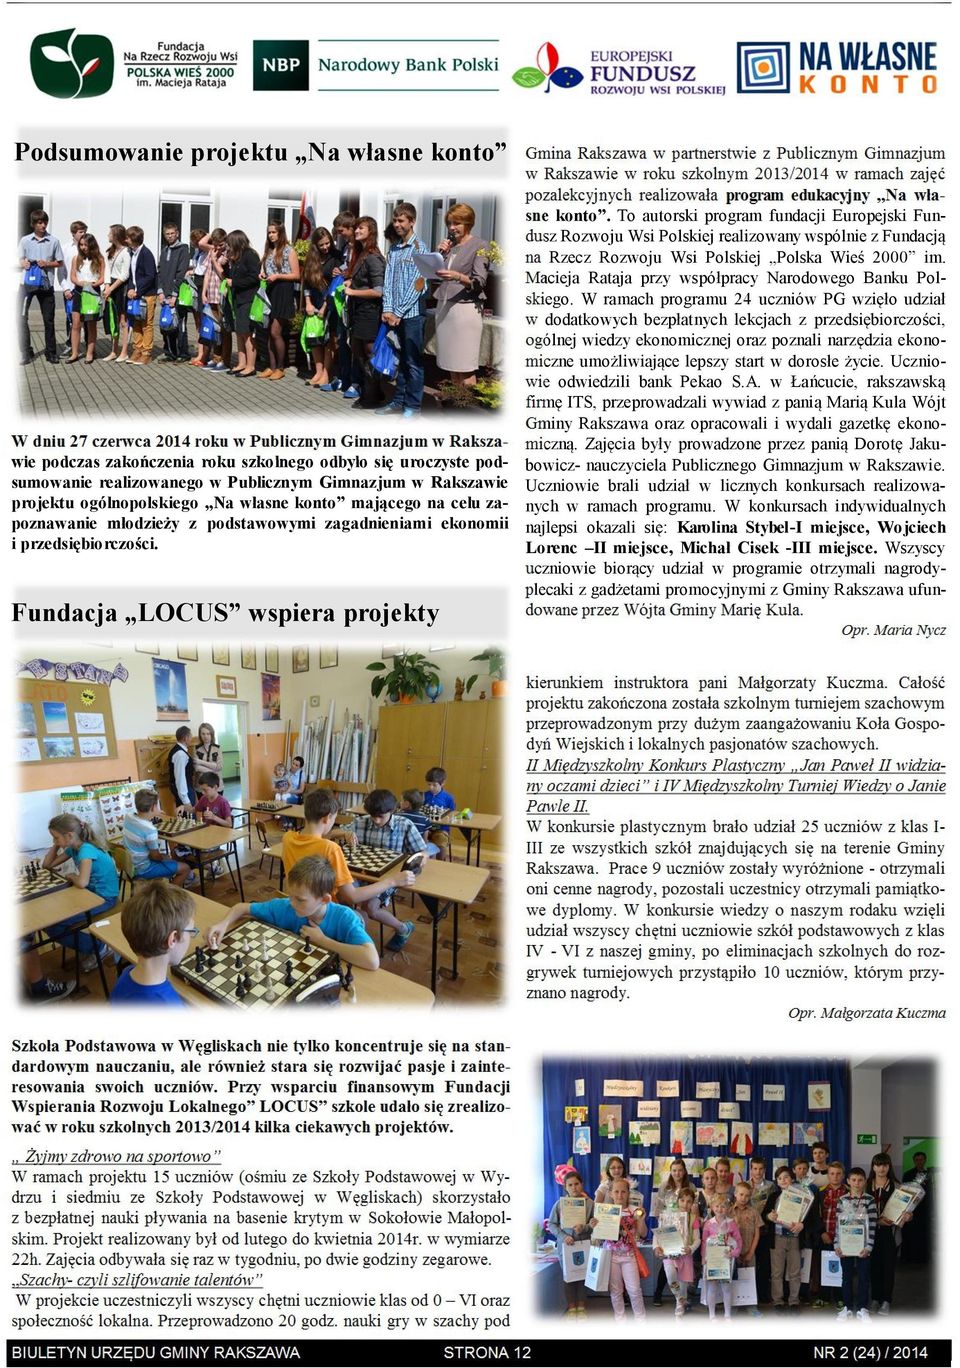 Fundacja LOCUS wspiera projekty Gmina Rakszawa w partnerstwie z Publicznym Gimnazjum w Rakszawie w roku szkolnym 2013/2014 w ramach zajęć pozalekcyjnych realizowała program edukacyjny Na własne konto.